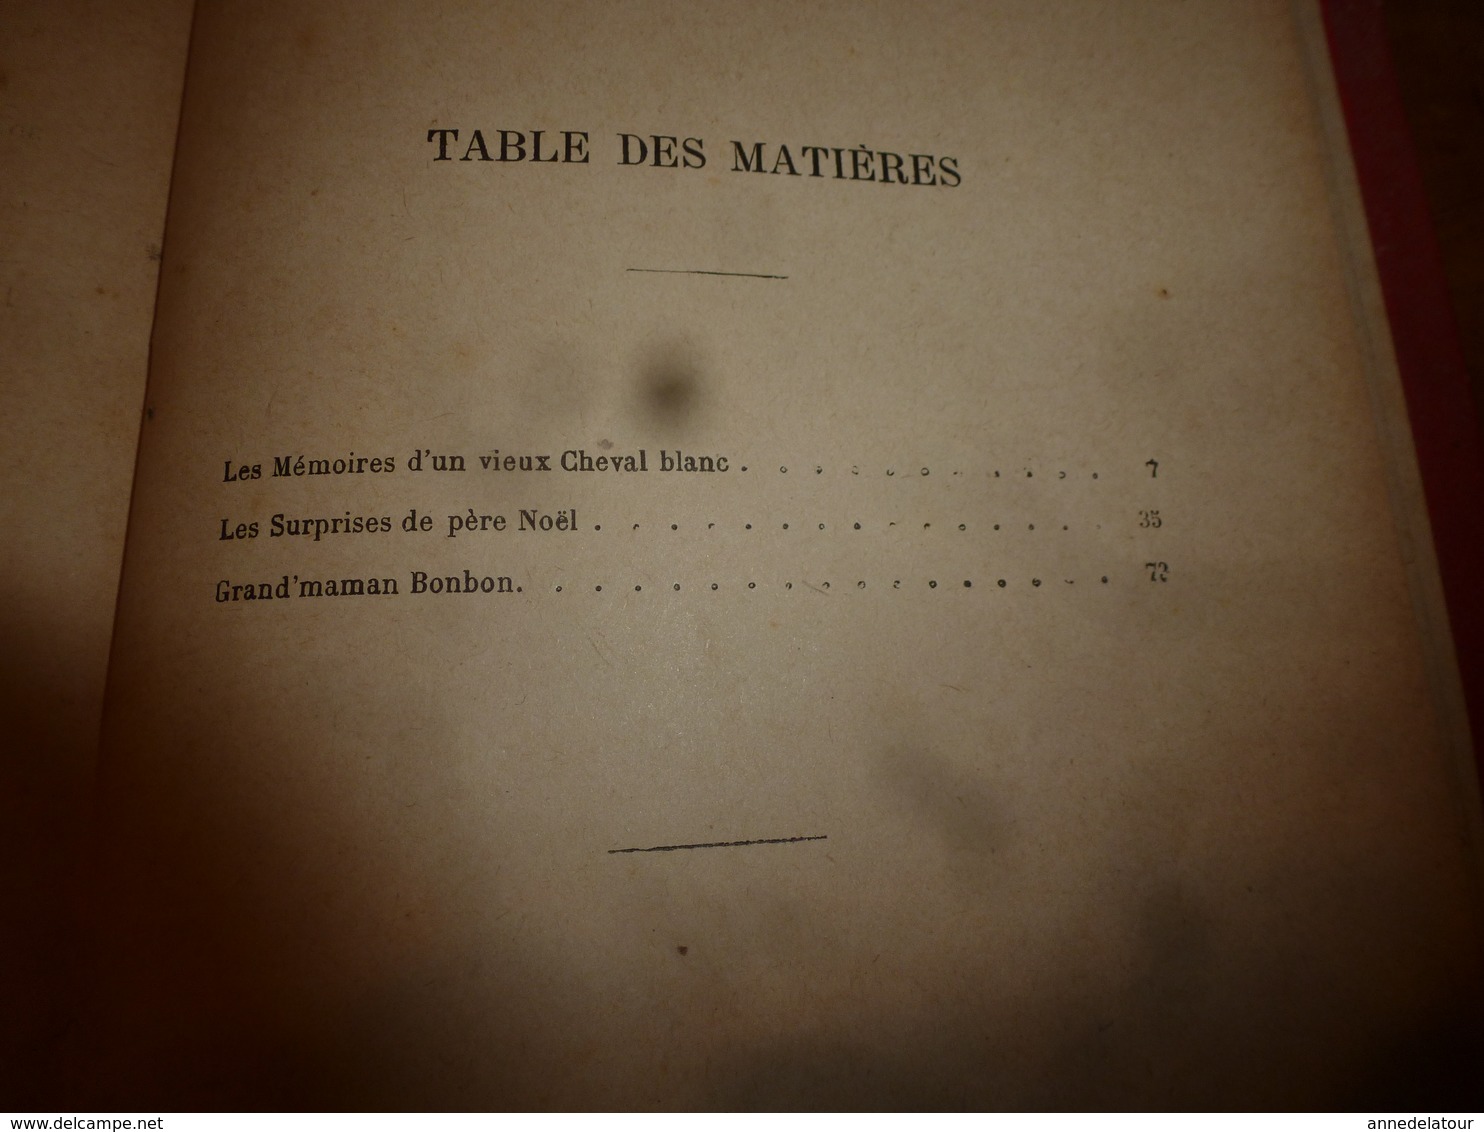 1902 MÉMOIRES D'UN VIEUX CHEVAL BLANC, par Paul Bonhomme , dessins de Kauffmann; Grand-Maman Bonbon; etc